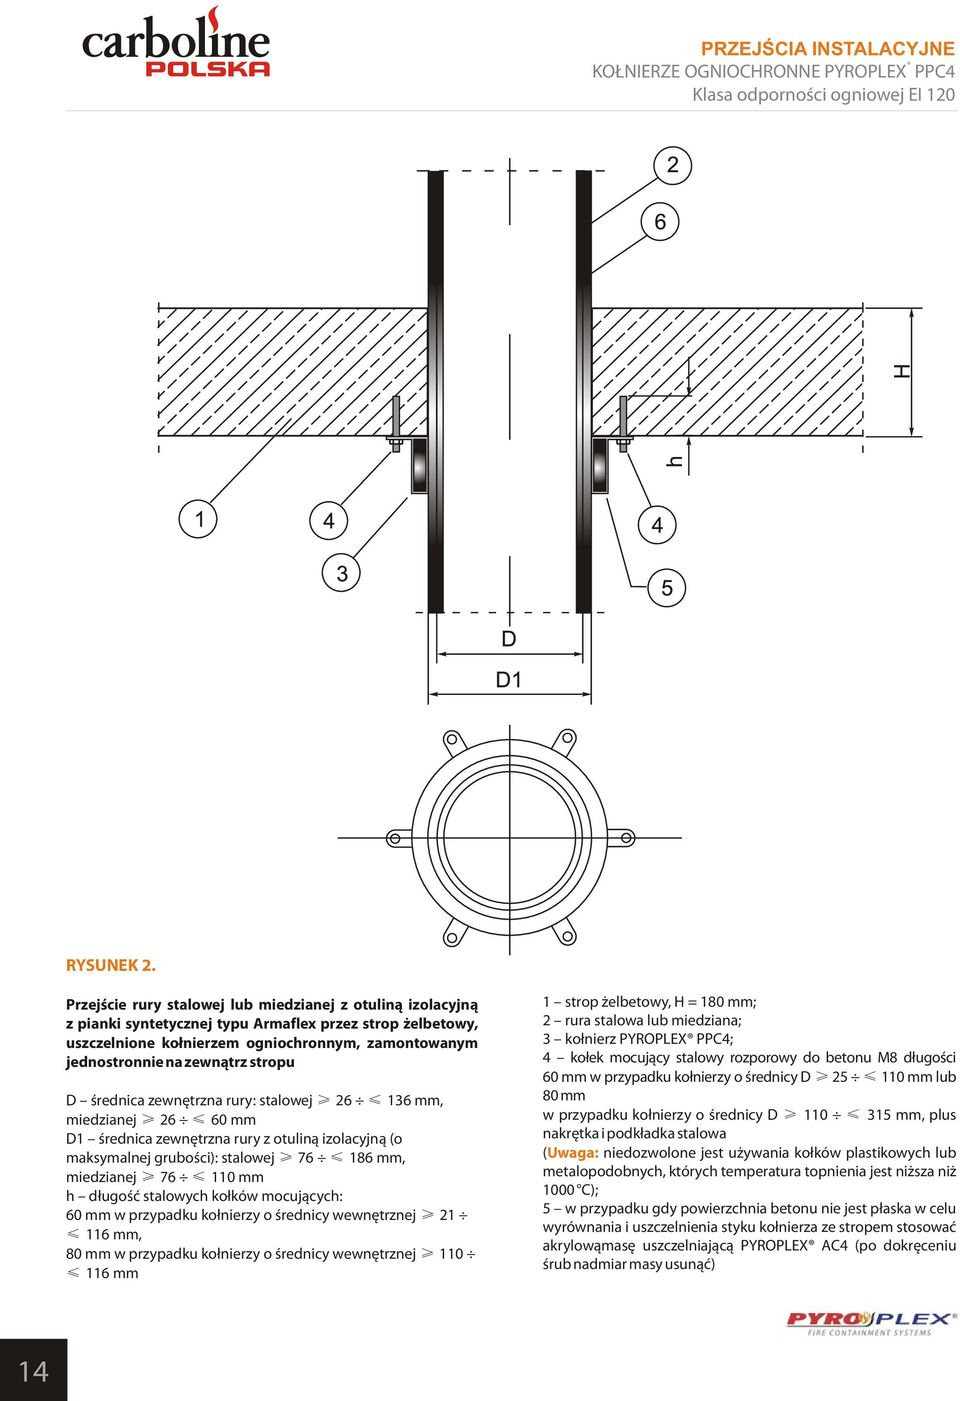 stropu D średnica zewnętrzna rury: stalowej 26 136 mm, miedzianej 26 60 mm D1 średnica zewnętrzna rury z otuliną izolacyjną (o maksymalnej grubości): stalowej 76 186 mm, miedzianej 76 110 mm h